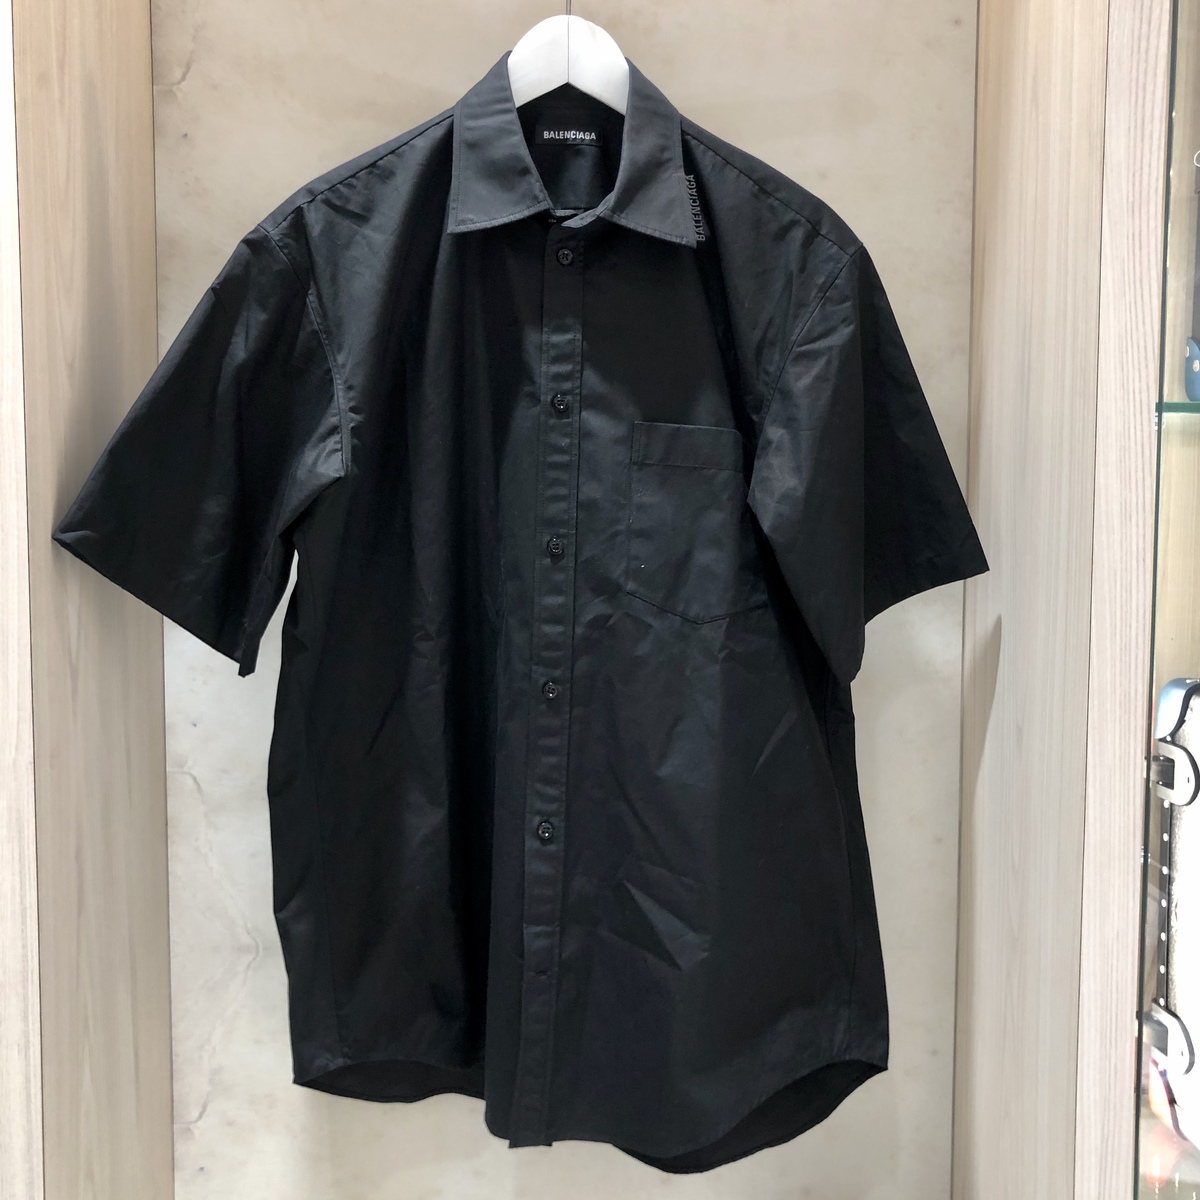 バレンシアガの2020年春夏 ブラック 602414 ホリゾンタルカラー LOGO SHIRT オーバーサイズシャツの買取実績です。